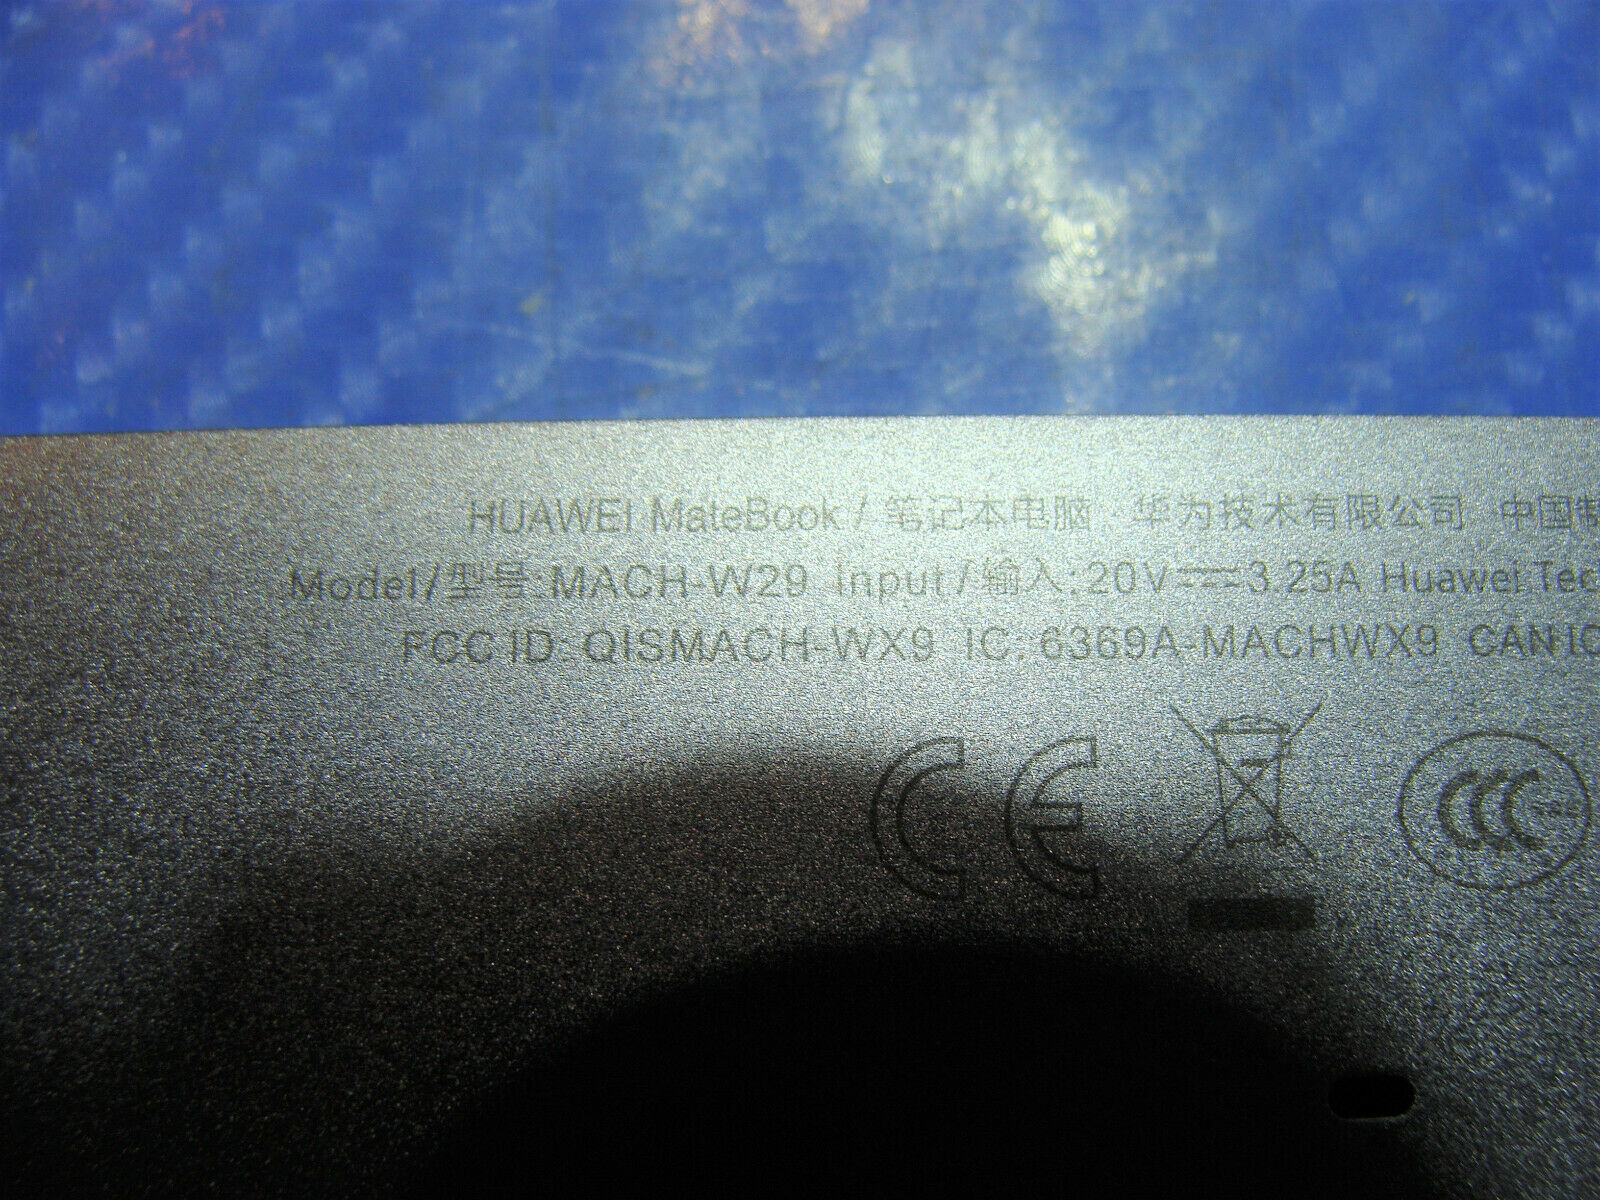 Huawei MateBook Mach-W29 13.9